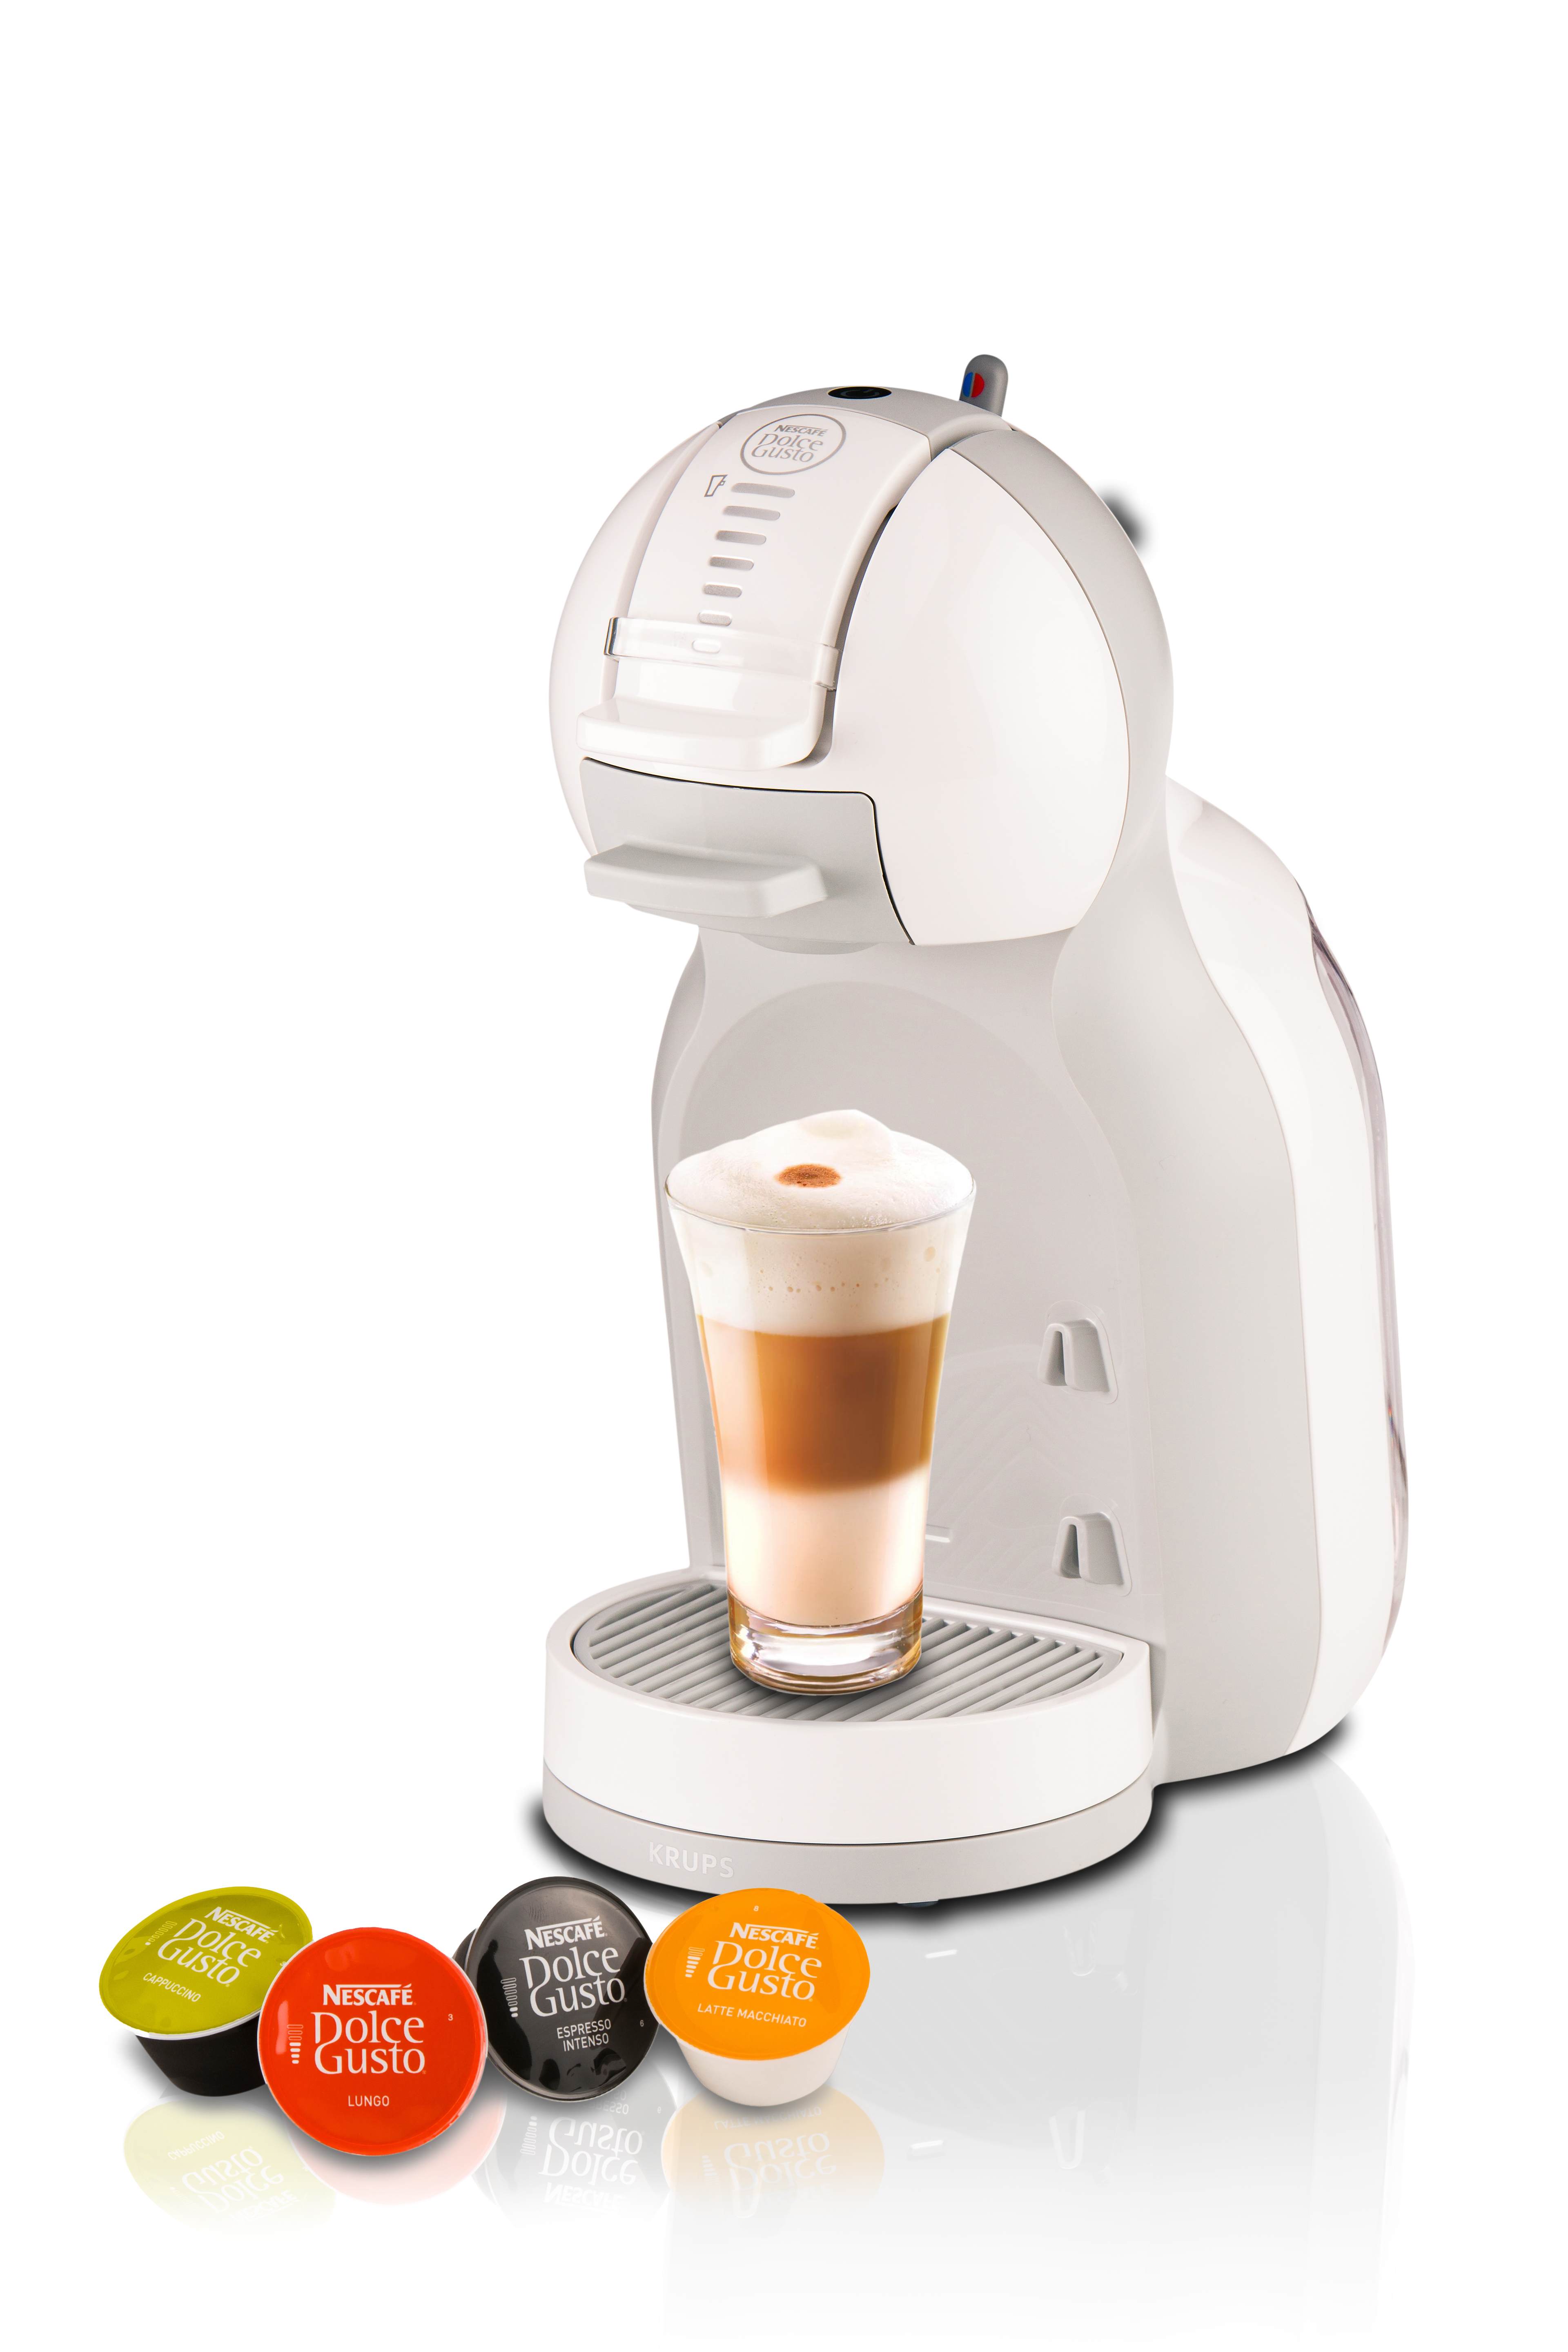 Krups Mini Me Automatica/Manuale Macchina per caffè a capsule 0,8 L [KP1201]